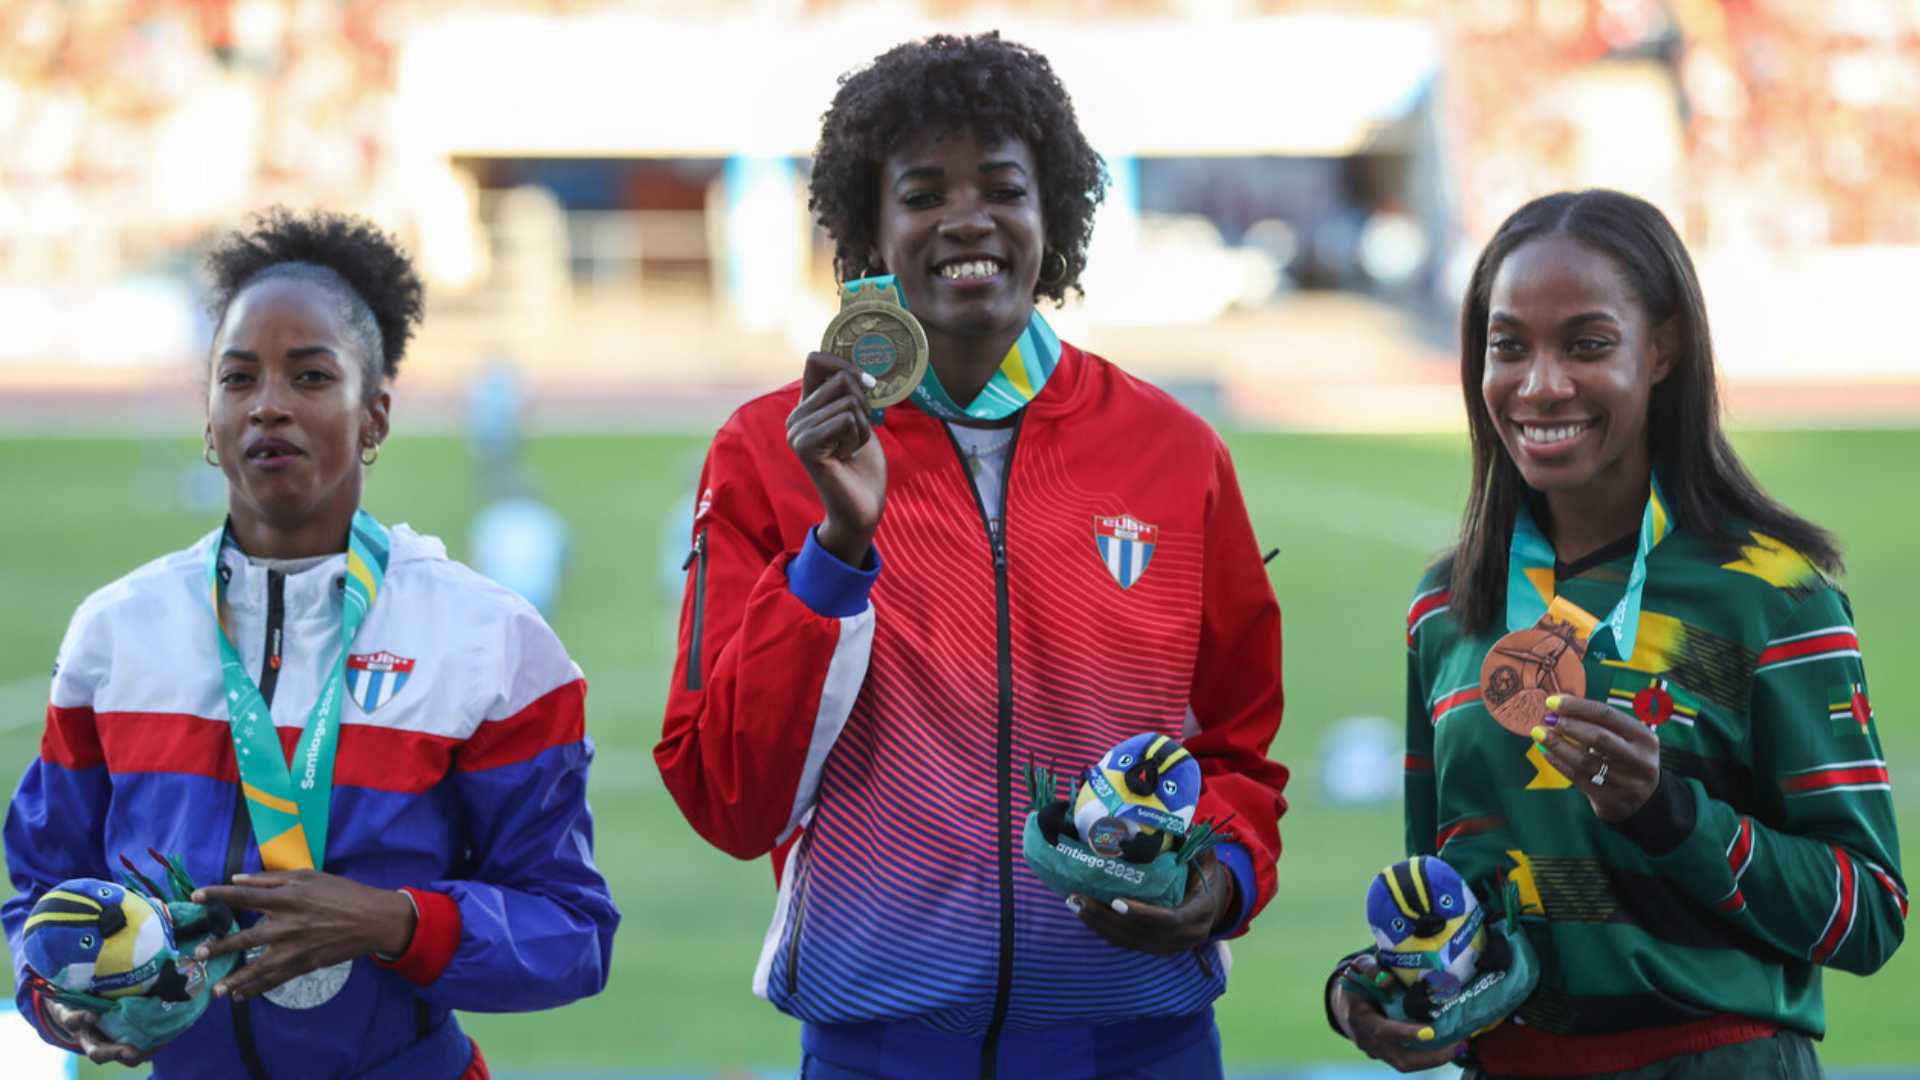 Resumen de la jornada: Cuba brilla en el atletismo de Santiago 2023